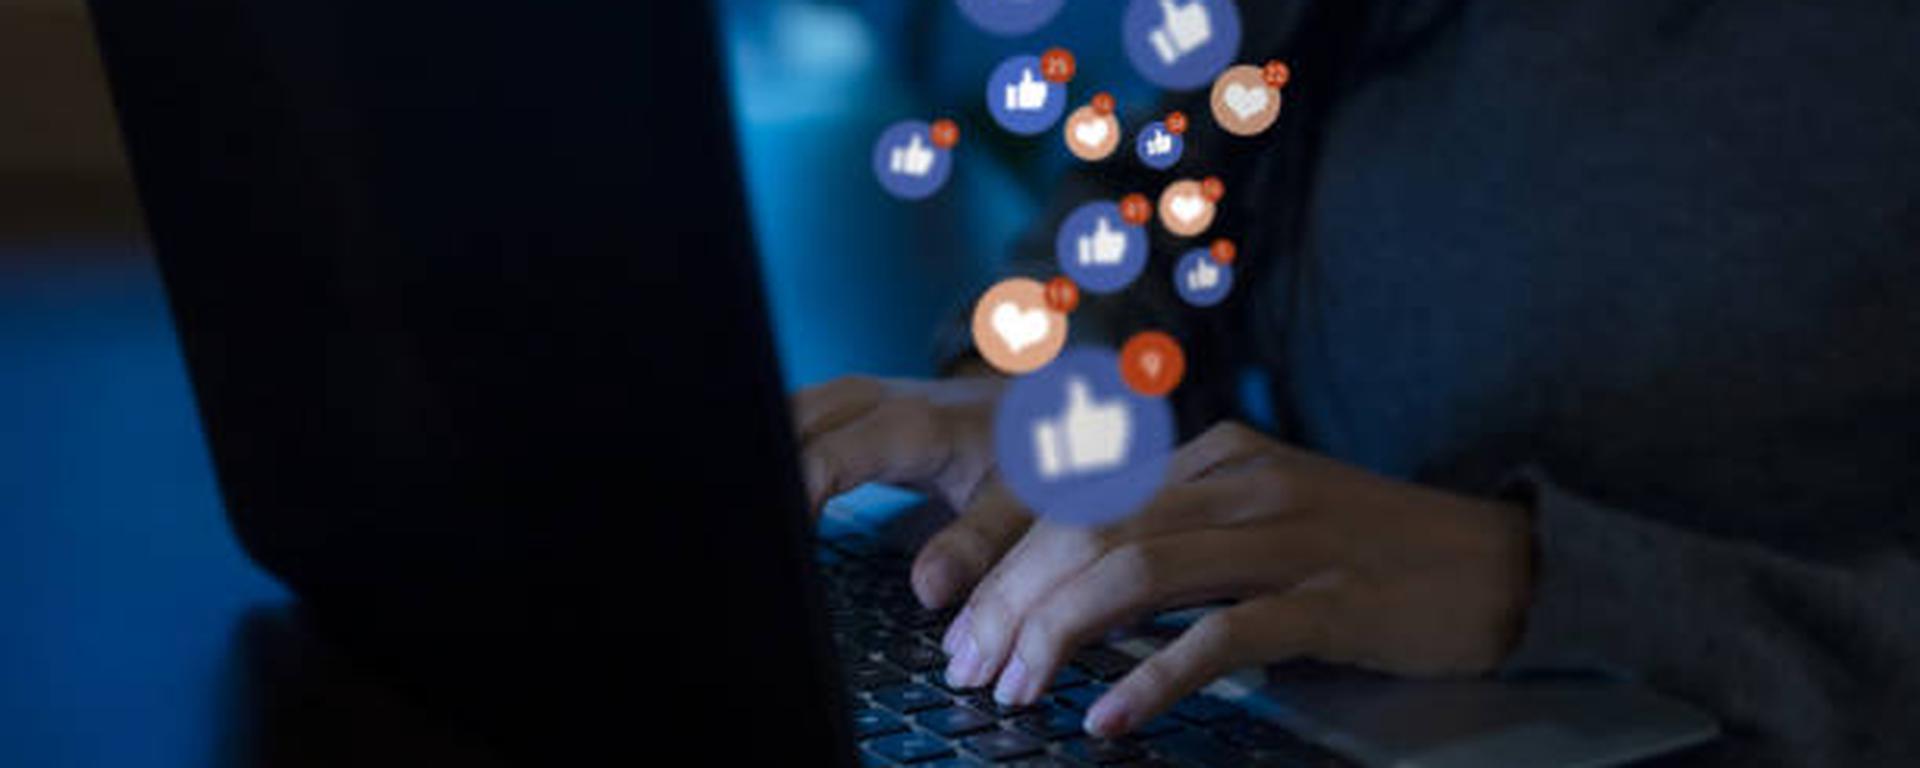 Ciberseguridad: ¿qué saben de ti las redes sociales y para qué lo usan?